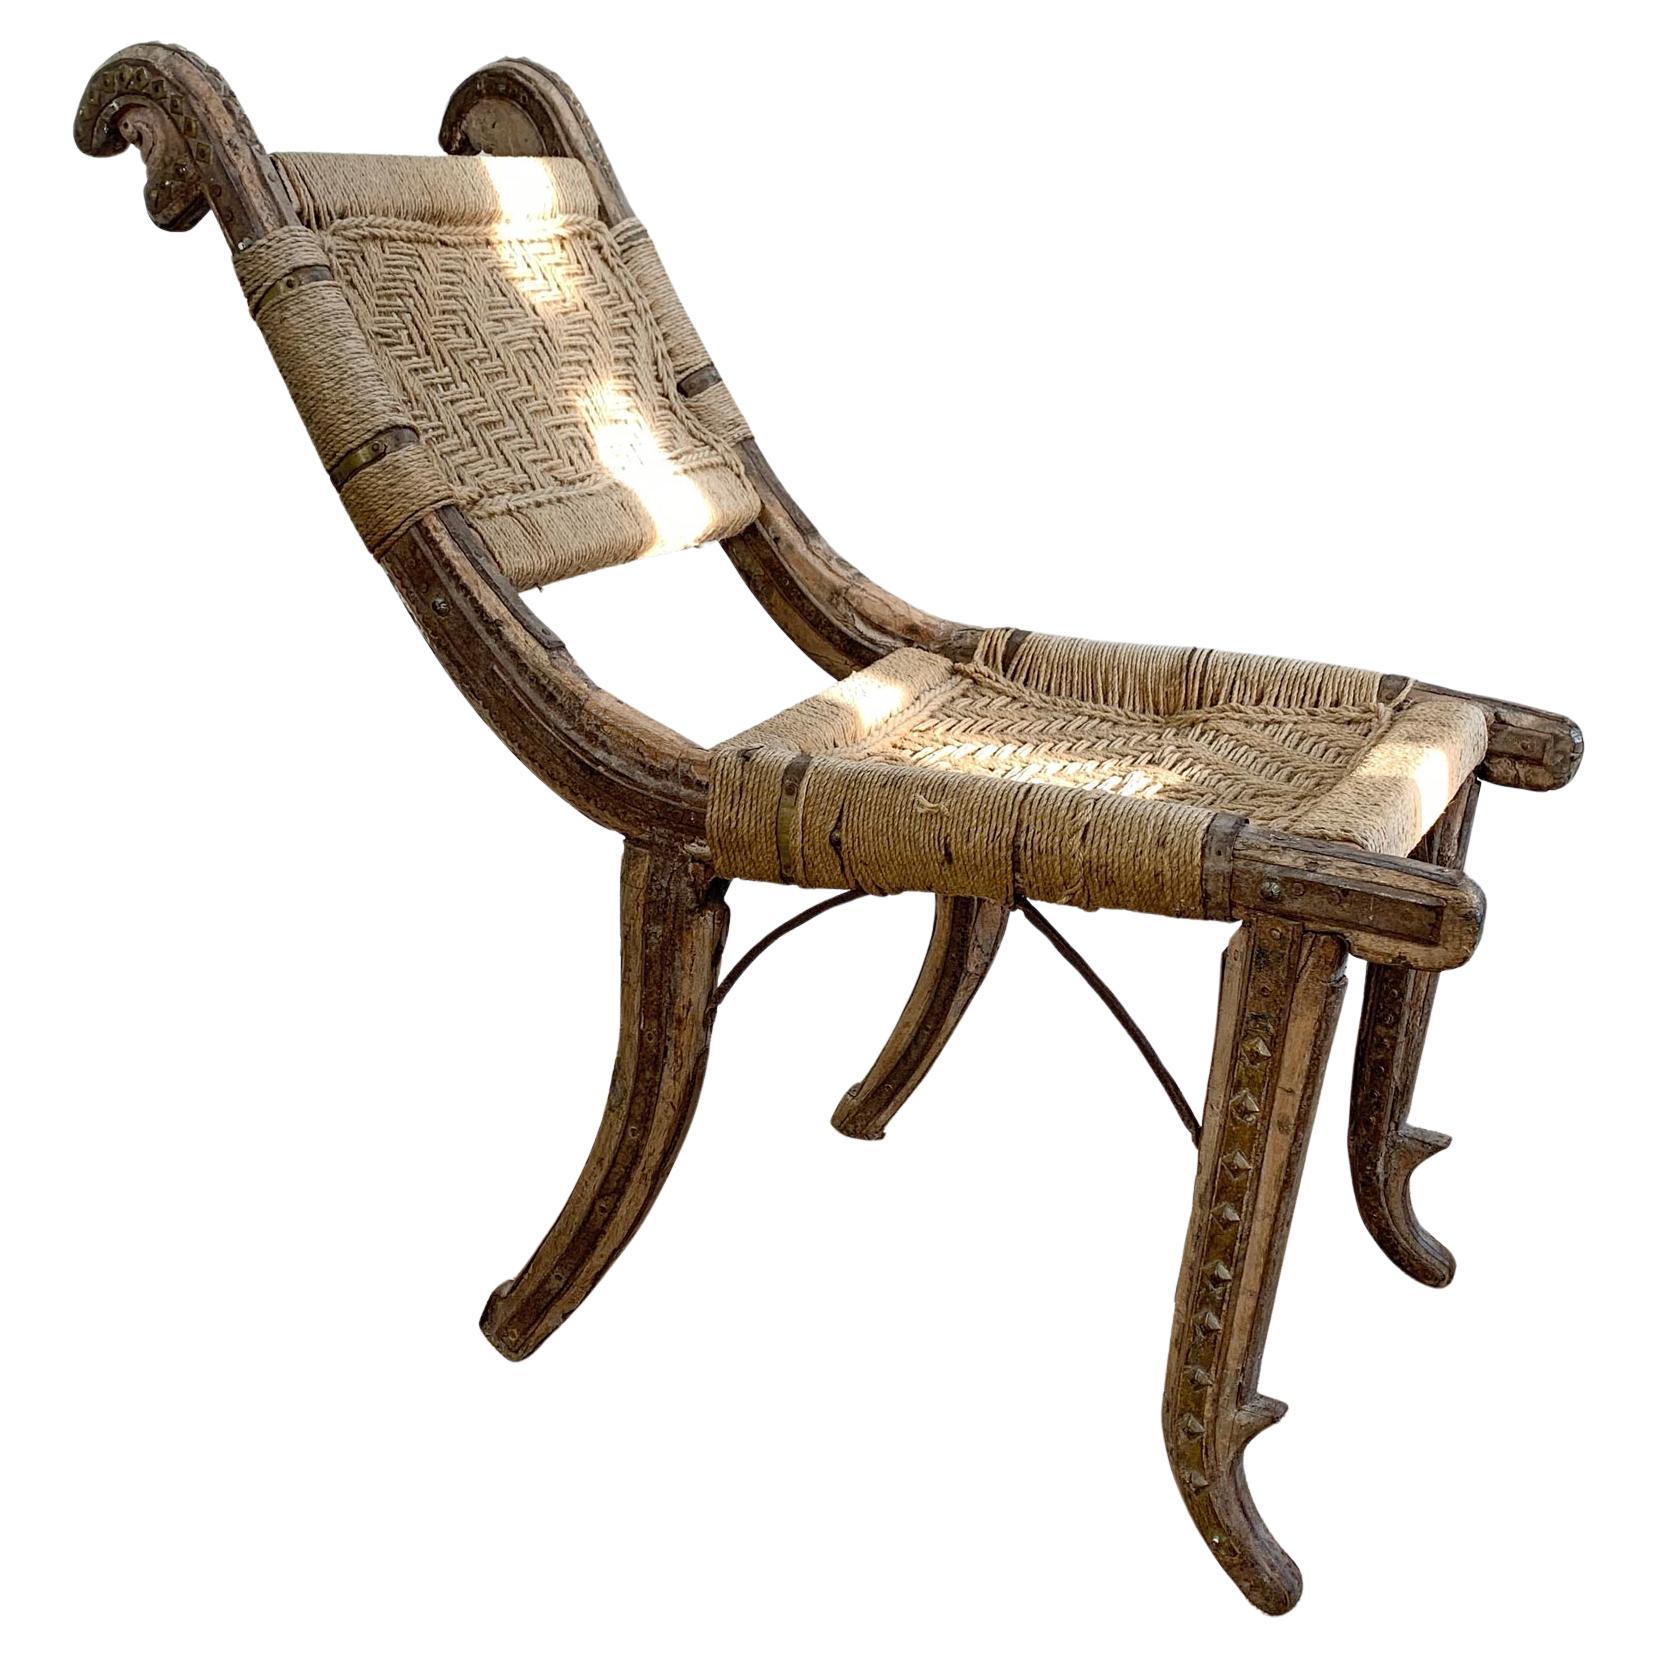 Primitive indischer Stuhl des 19. Jahrhunderts